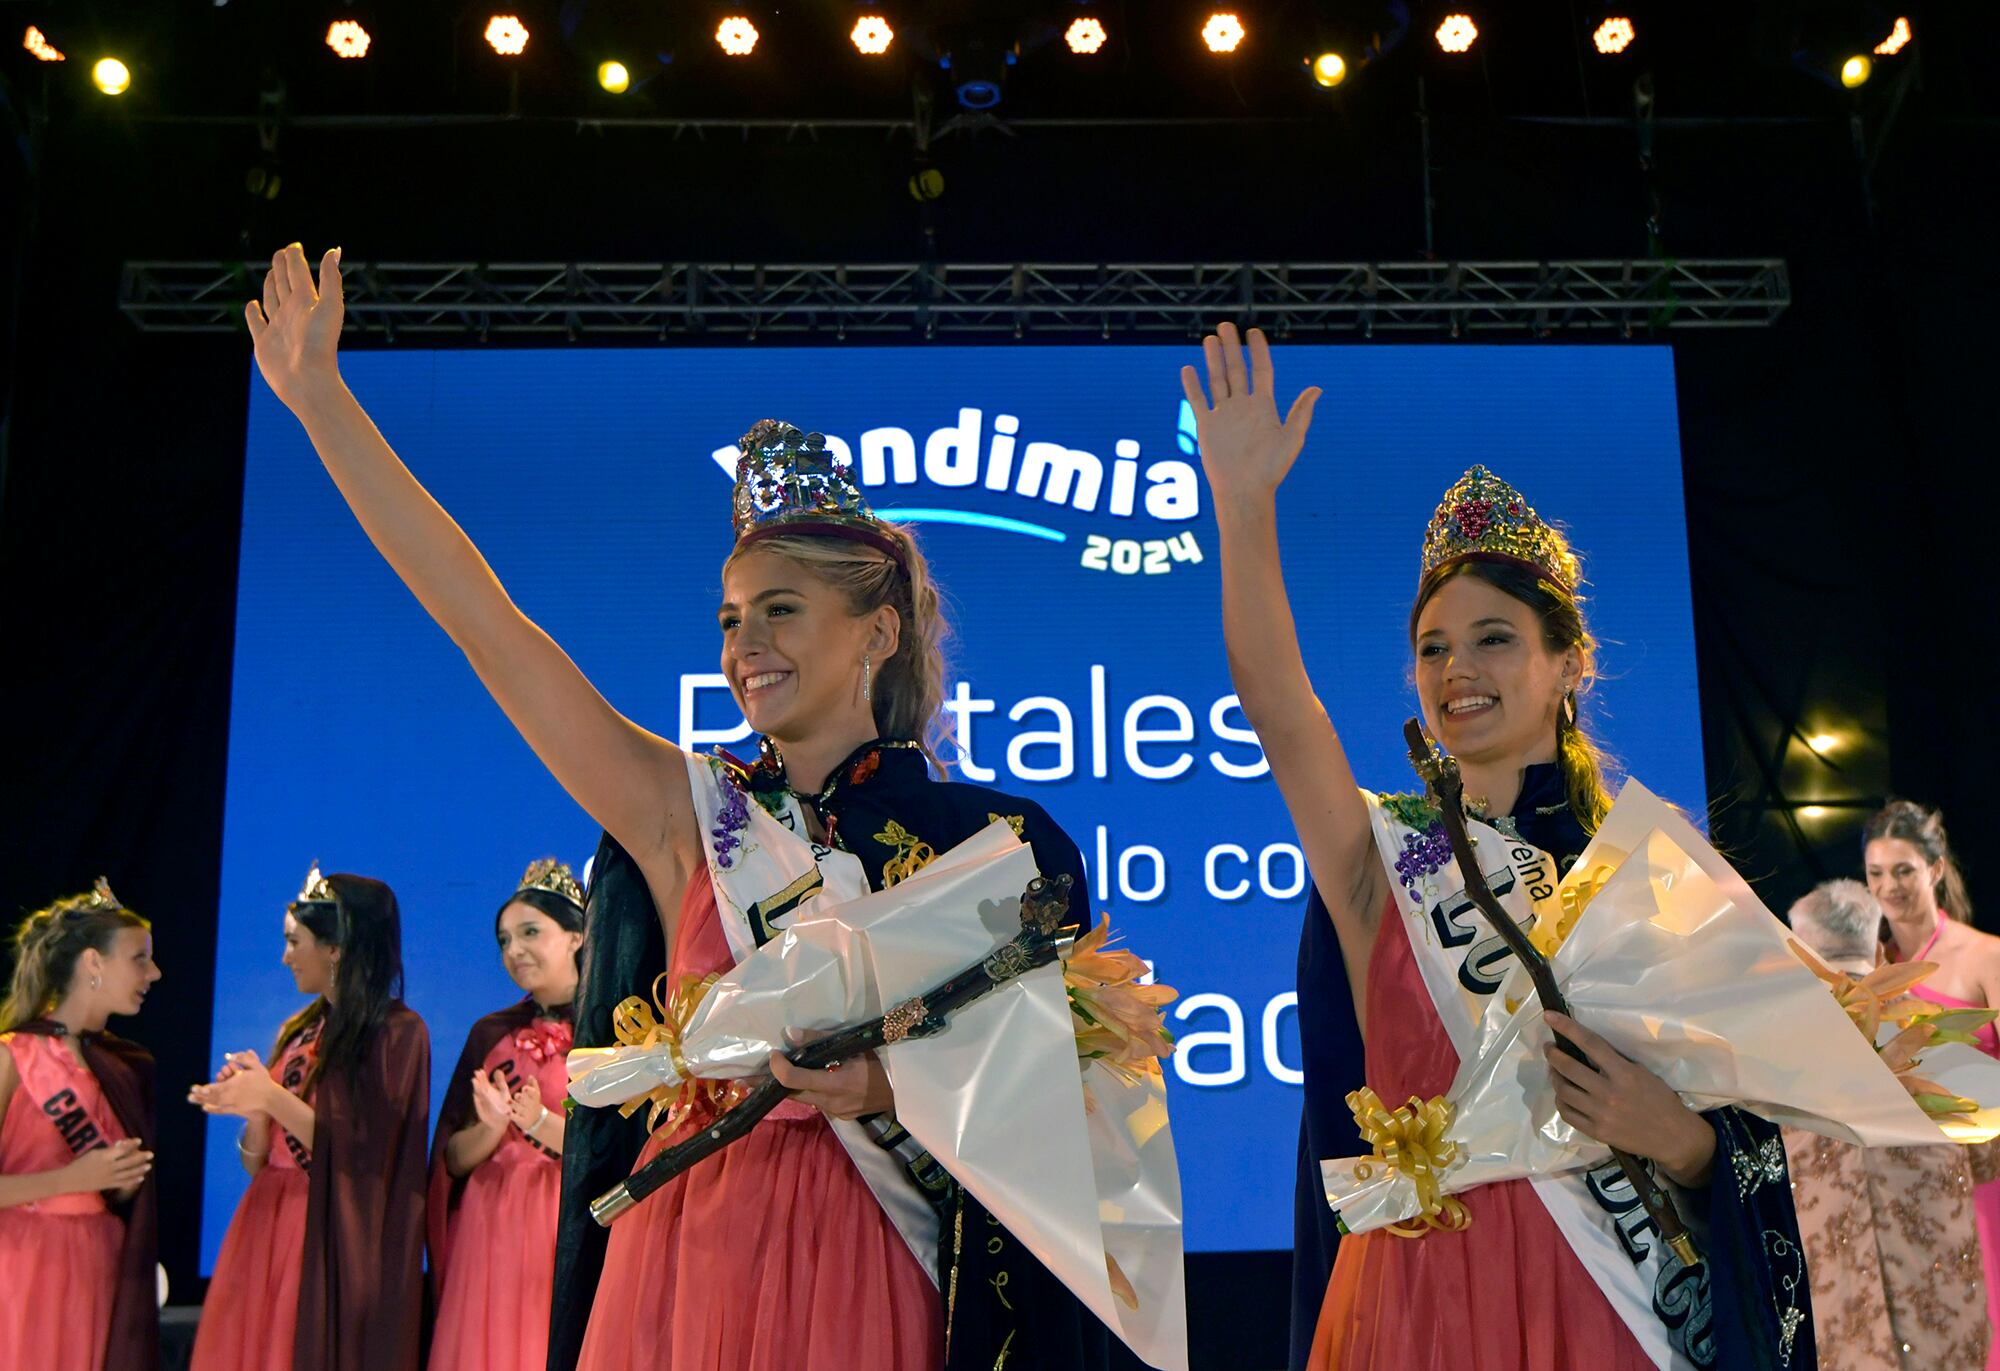 Fiesta de la Vendimia de Luján de Cuyo 2024 que coronó como reina a Julieta Bosquet del distrito de La Puntilla.

Foto: Orlando Pelichotti